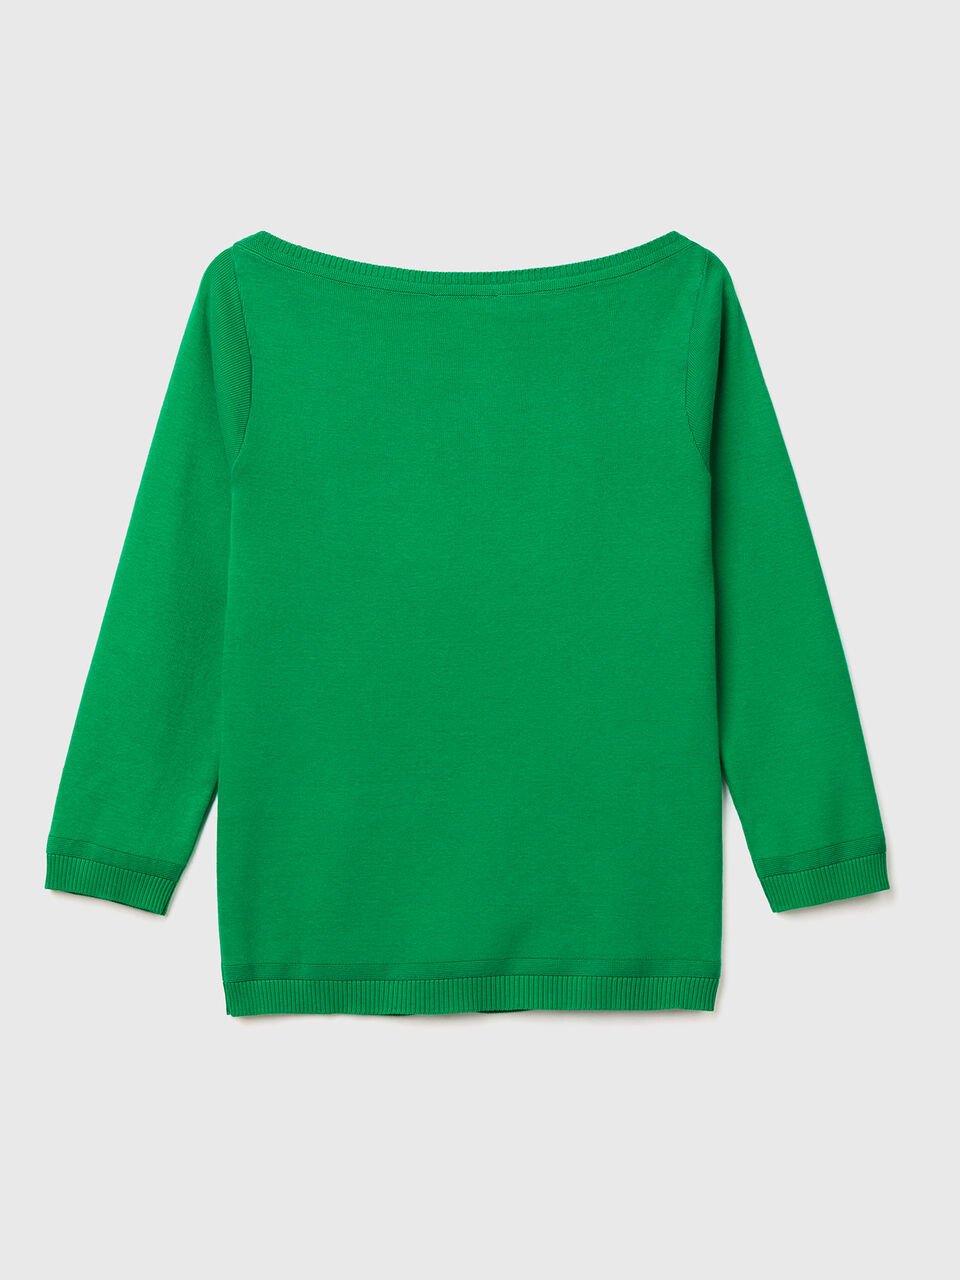 Pulli aus Baumwolle mit U-Boot-Ausschnitt 100% - Benetton Grün 